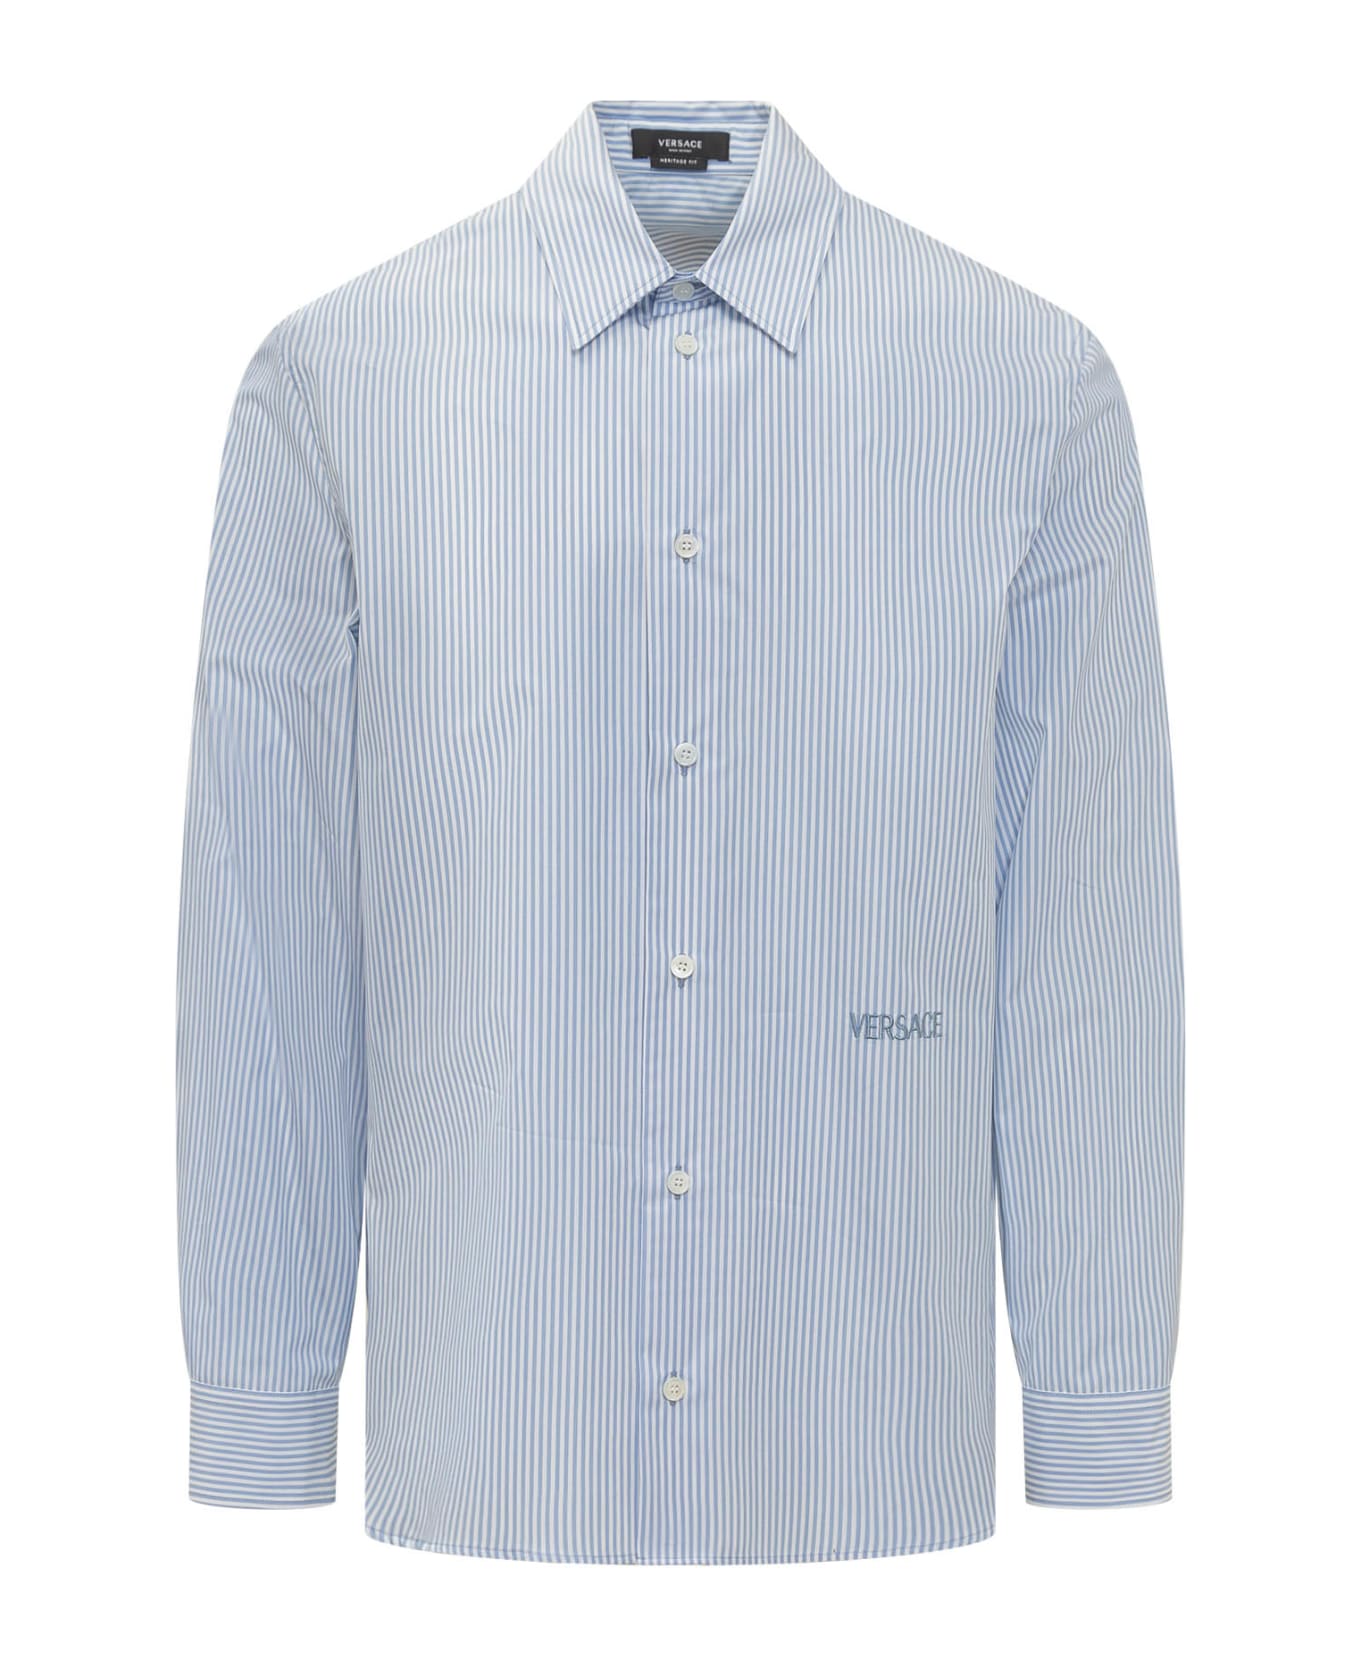 Versace Cotton Poplin Shirt - Light Blue シャツ